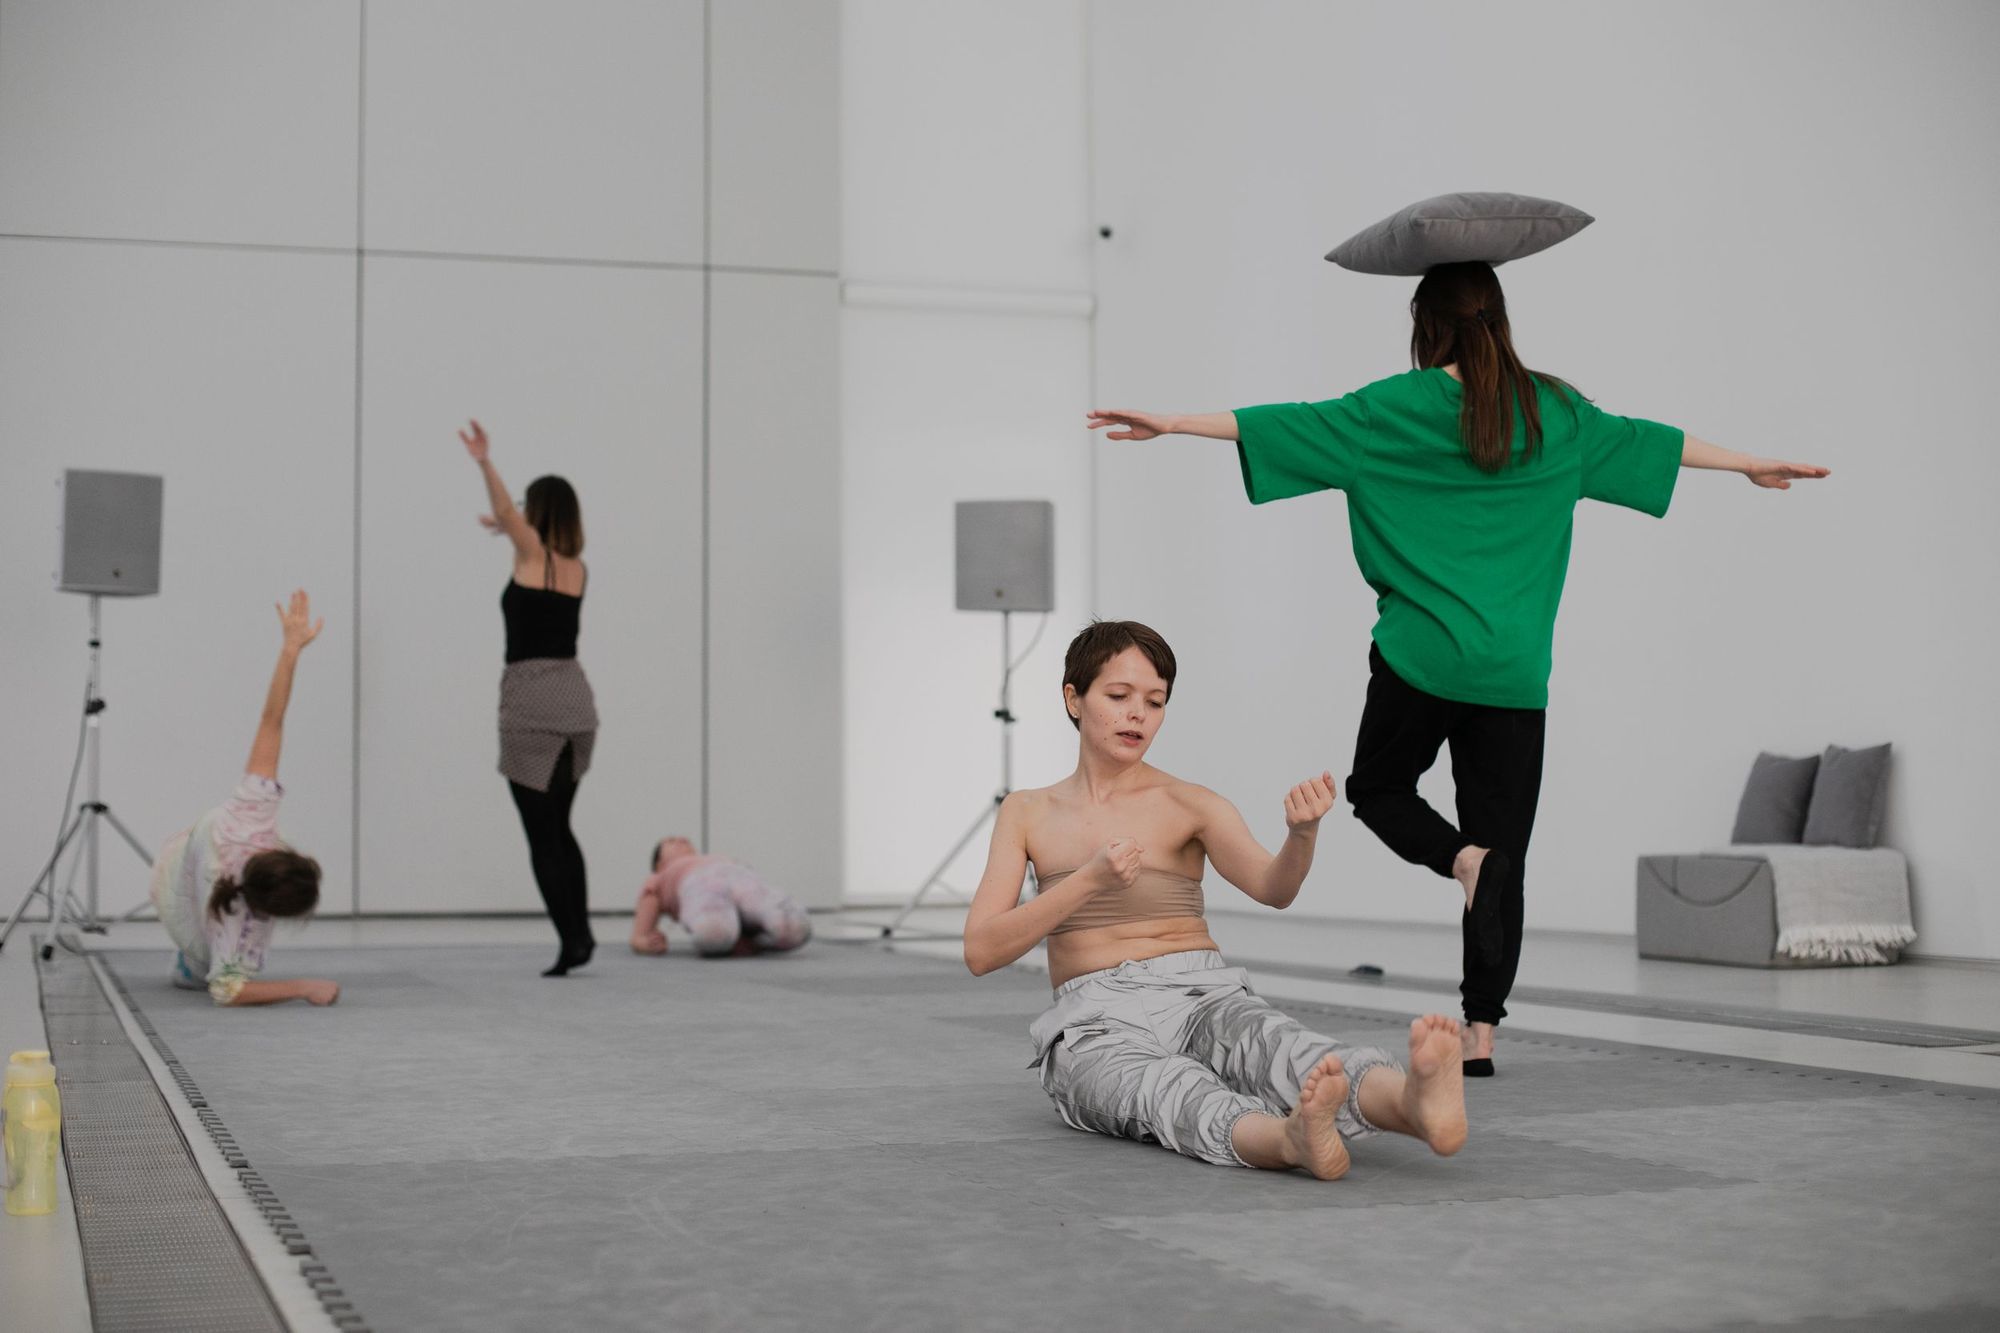  Люди в танц-классе на занятии, женщина балансирует на одной ноге с подушкой на голове